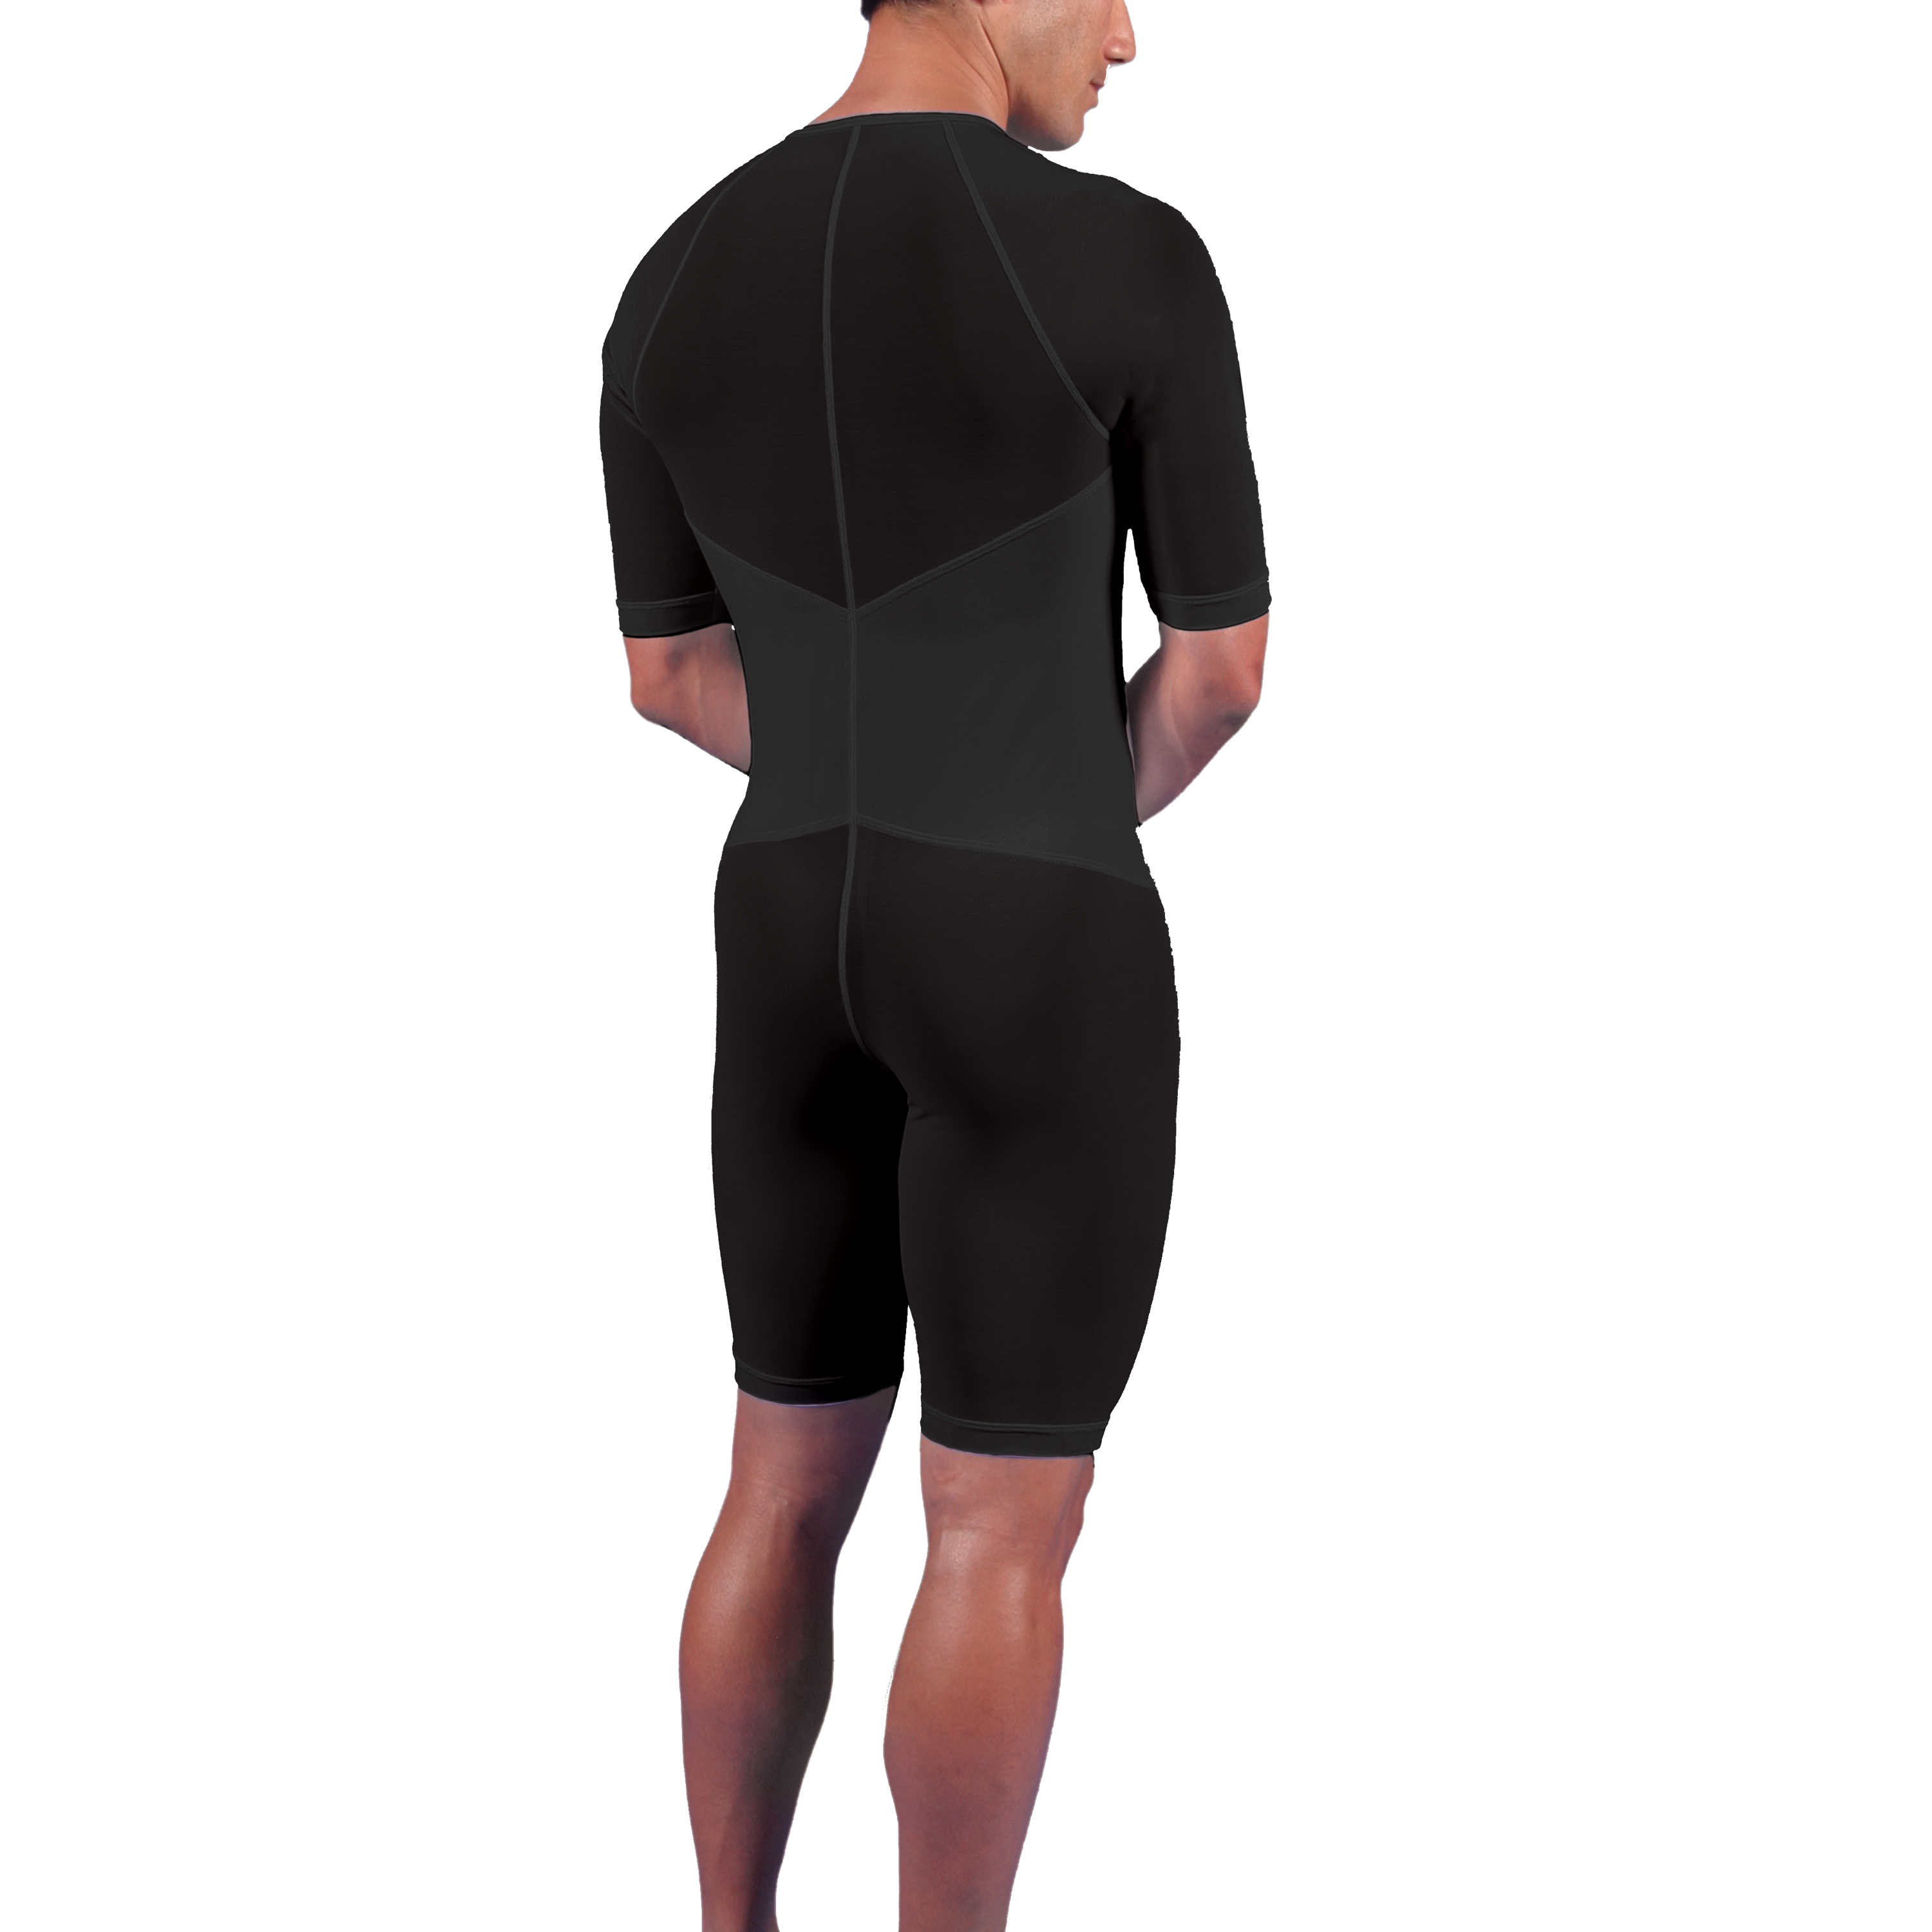 Kompressions-Body mit knielangem Bein und kurzem Arm, mit Reißverschluss